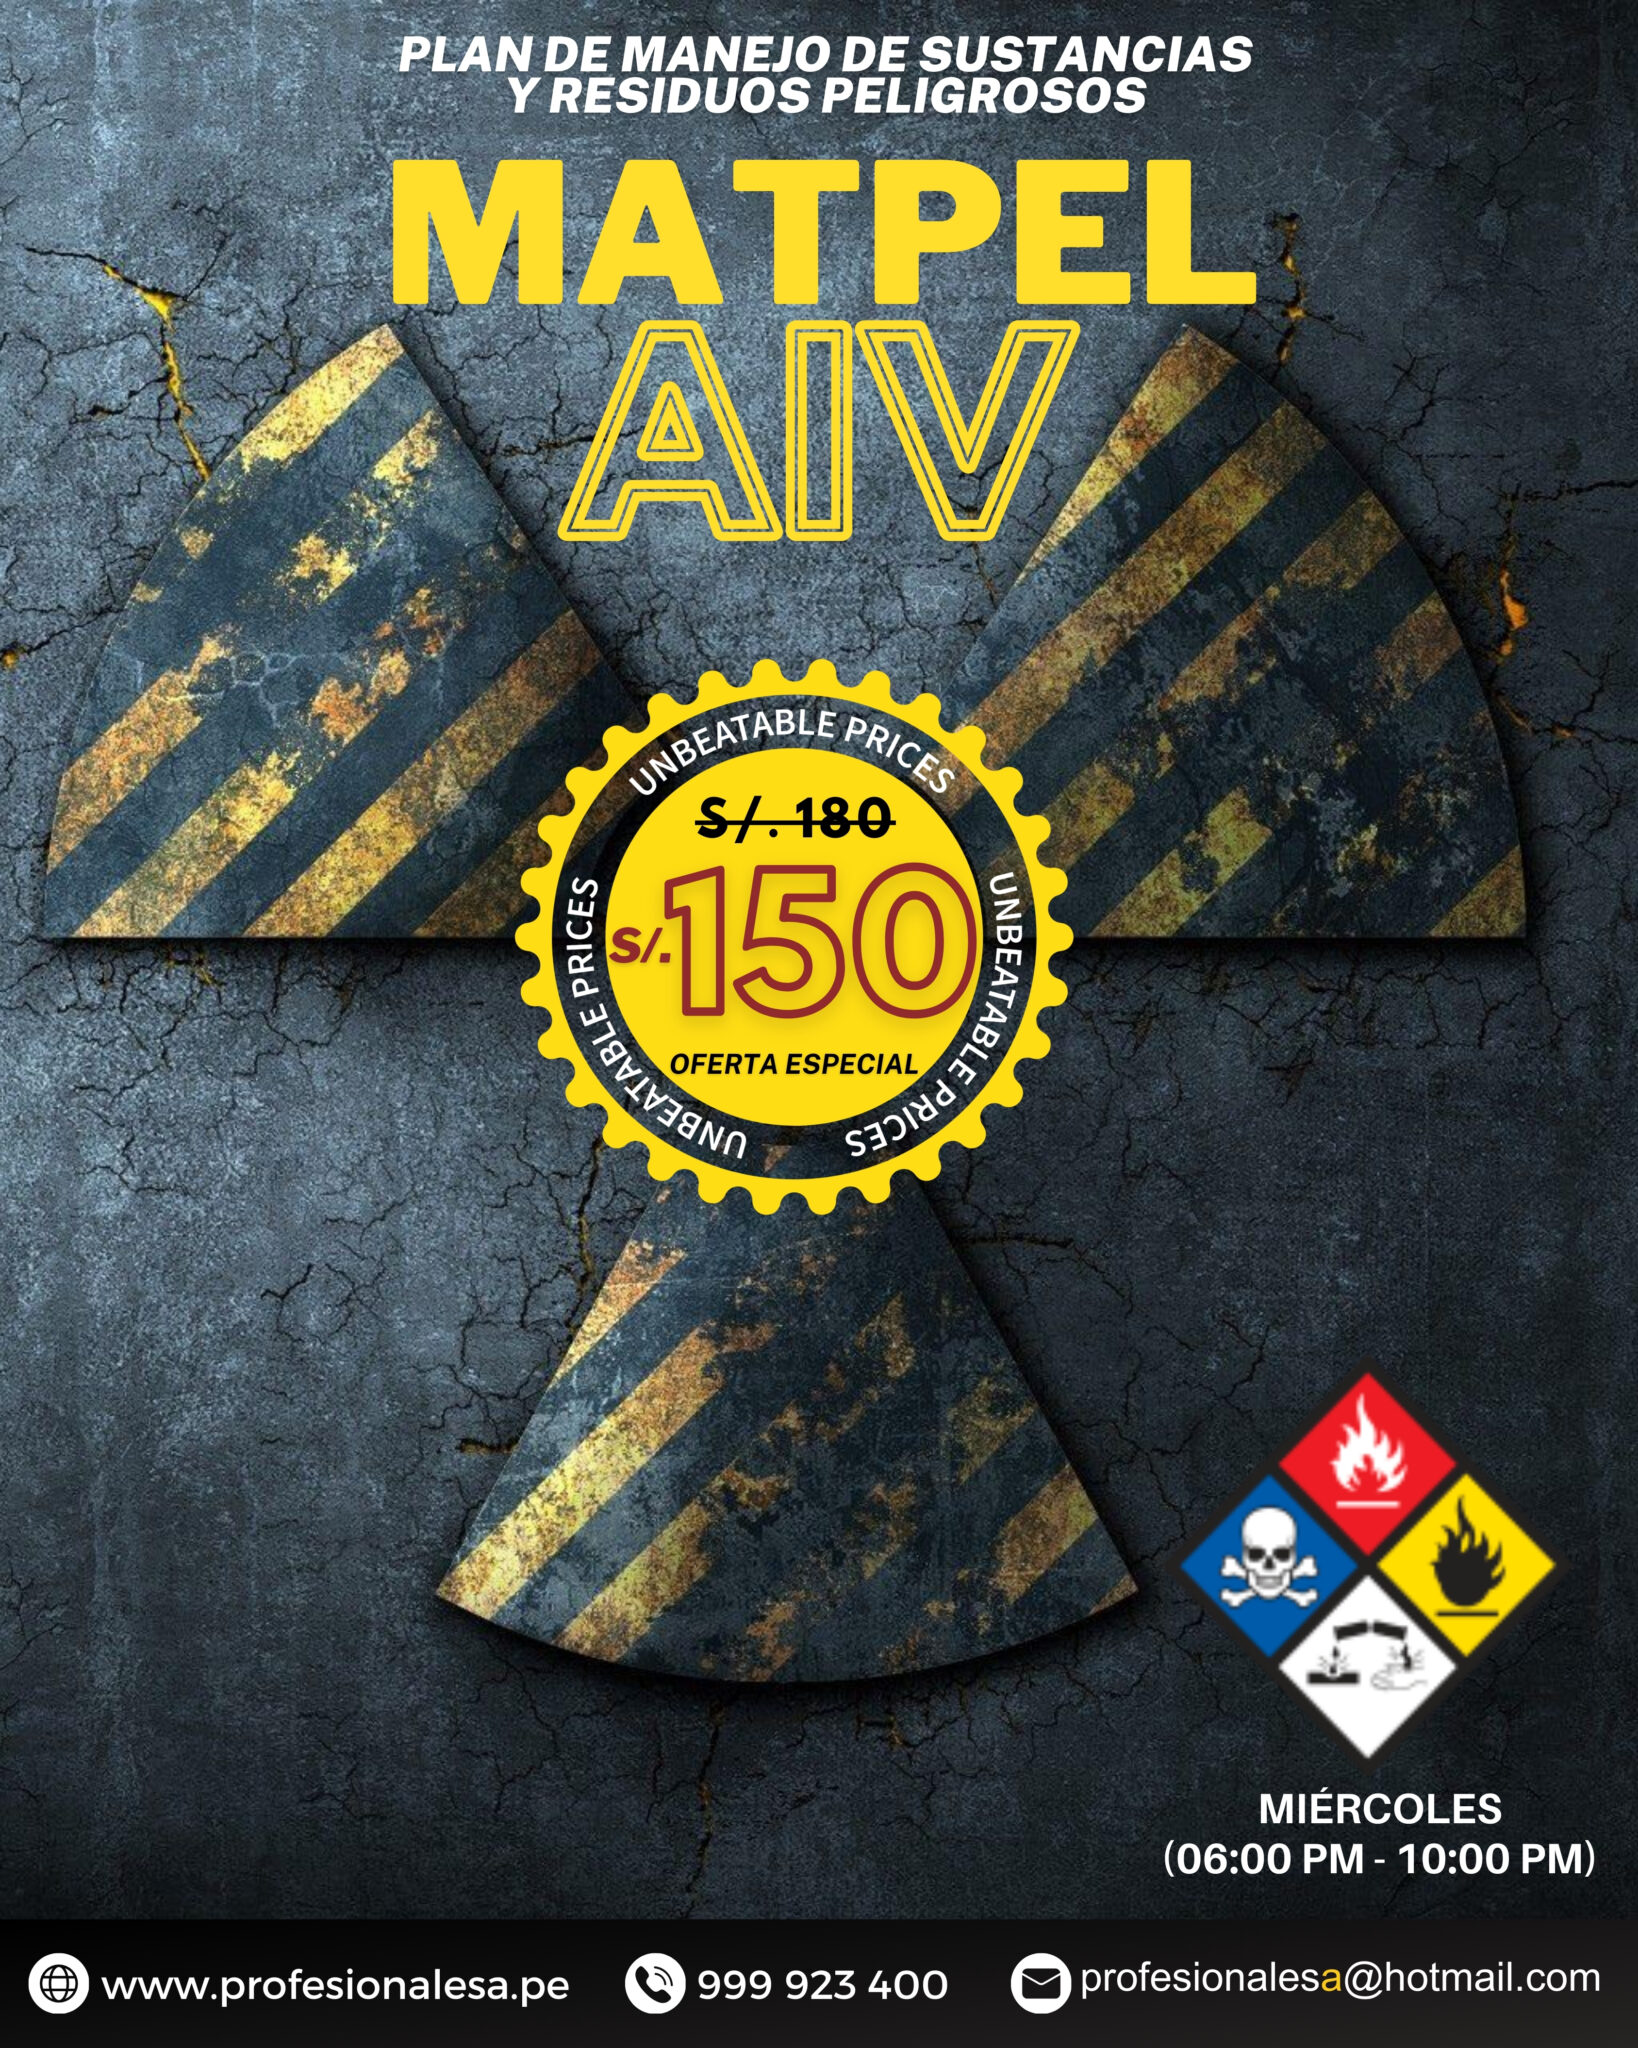 Licencia Matpel AIV